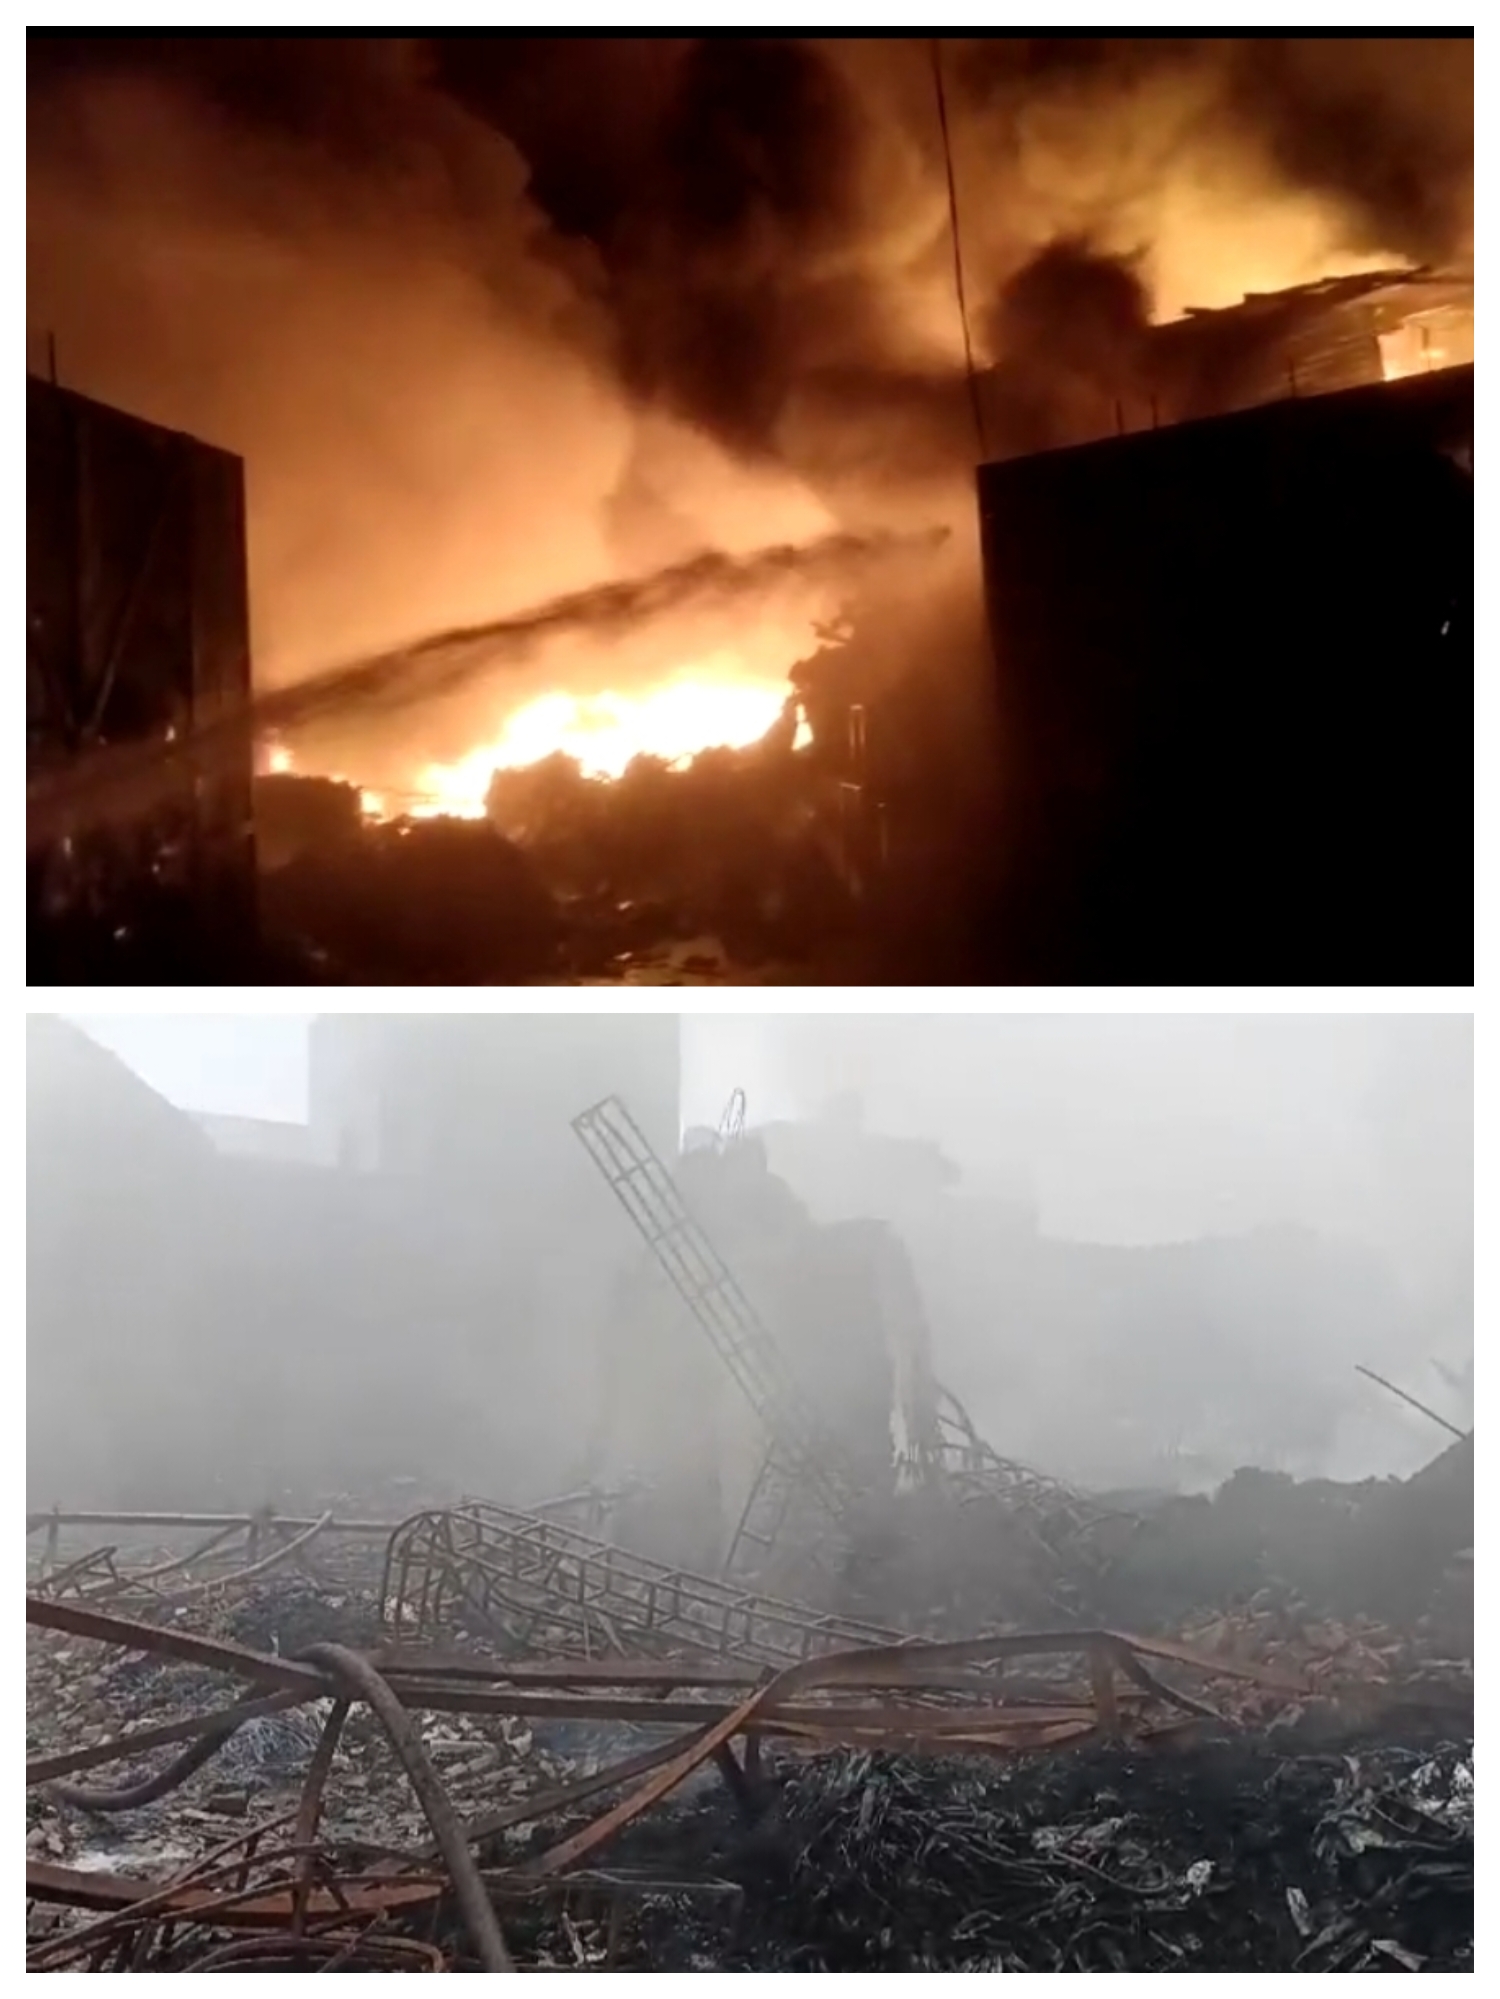 कबाड़ की गोदाम में लगी भयंकर आग, भयंकर लगी आग के दौरान आसपास के लोगों के घर खाली कराने पड़े, अफरा- तफरी माहौल